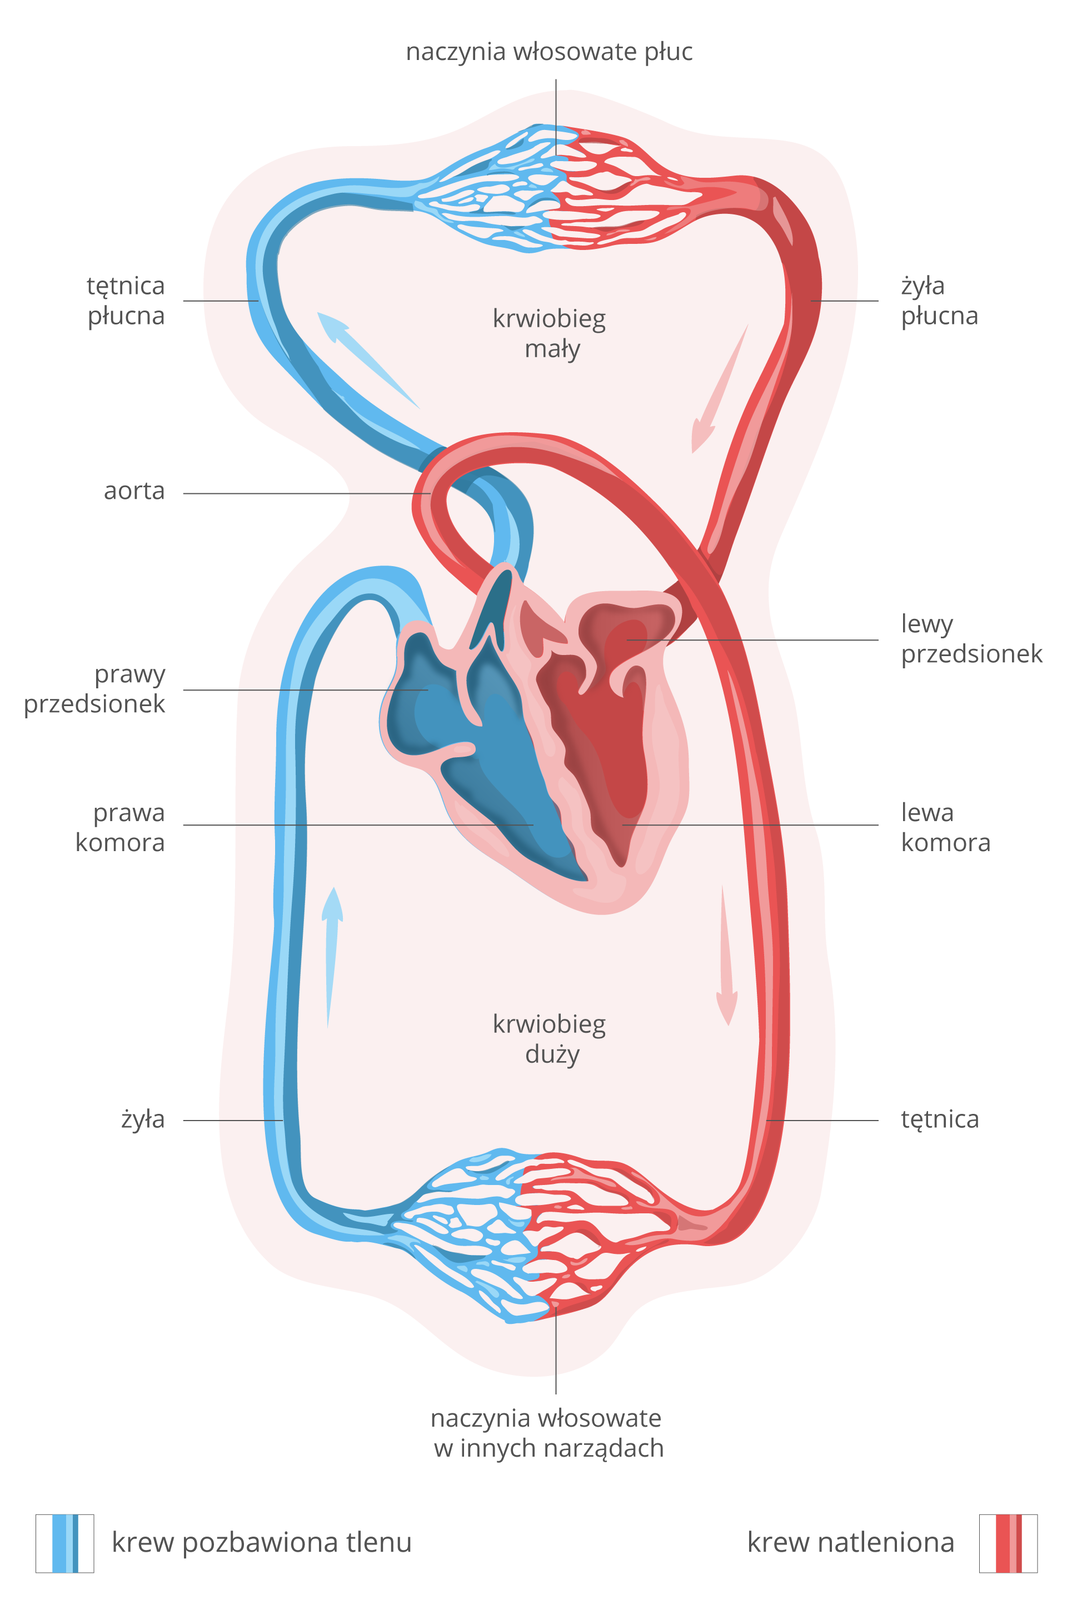 Ilustracja przedstawia schemat krążenia krwi w organizmie ssaka. Kolor niebieski oznacza krew bez tlenu, kolor czerwony krew z tlenem. W centrum różowe serce w przekroju. Strzałki wskazują kierunek przepływu krwi. U góry krwiobieg mały, u dołu duży. Z prawej komory krew bez tlenu tętnicą płucną płynie do naczyń włosowatych w płucach. Wraca z tlenem do lewego przedsionka żyłą płucną. Z przedsionka do lewej komory, a z niej wypływa aortą. Mniejszymi tętnicami krew z tlenem płynie do naczyń włosowatych w innych narządach. Stamtąd wraca żyłami do prawego przedsionka serca i do komory prawej.